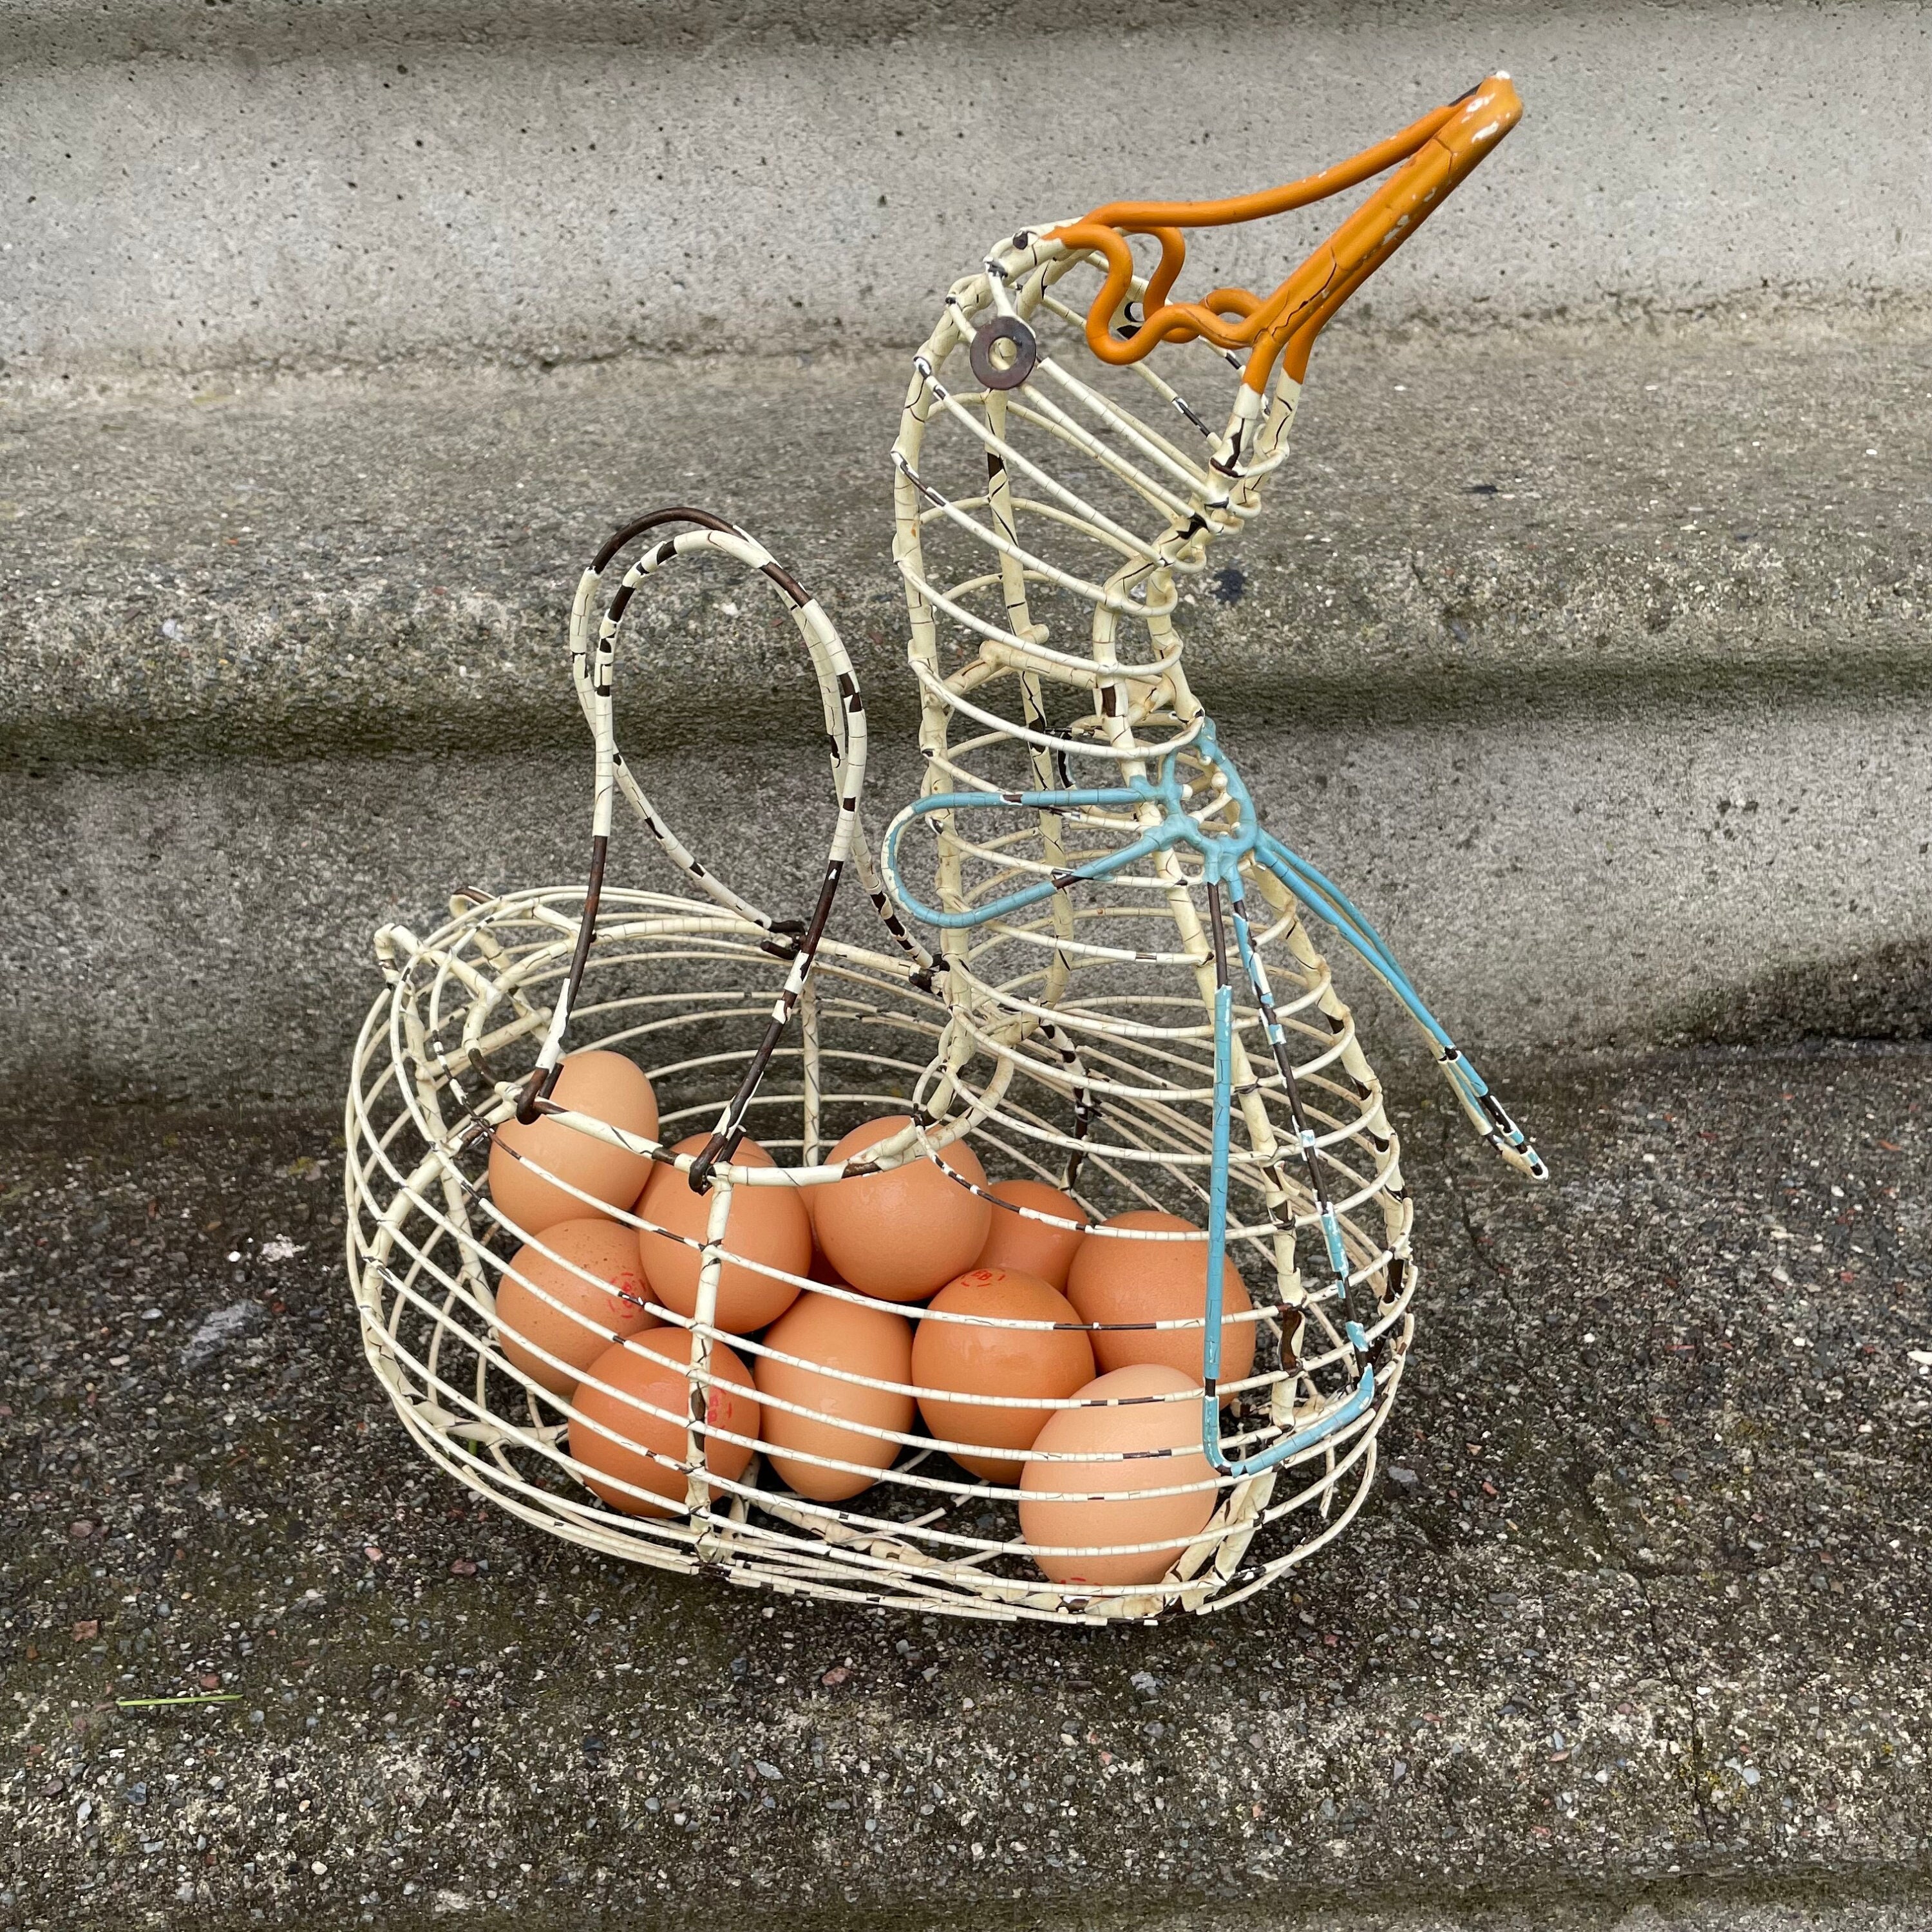 Henlay Duck Egg Cartons Holds Half Dozen Jumbo Eggs From Your